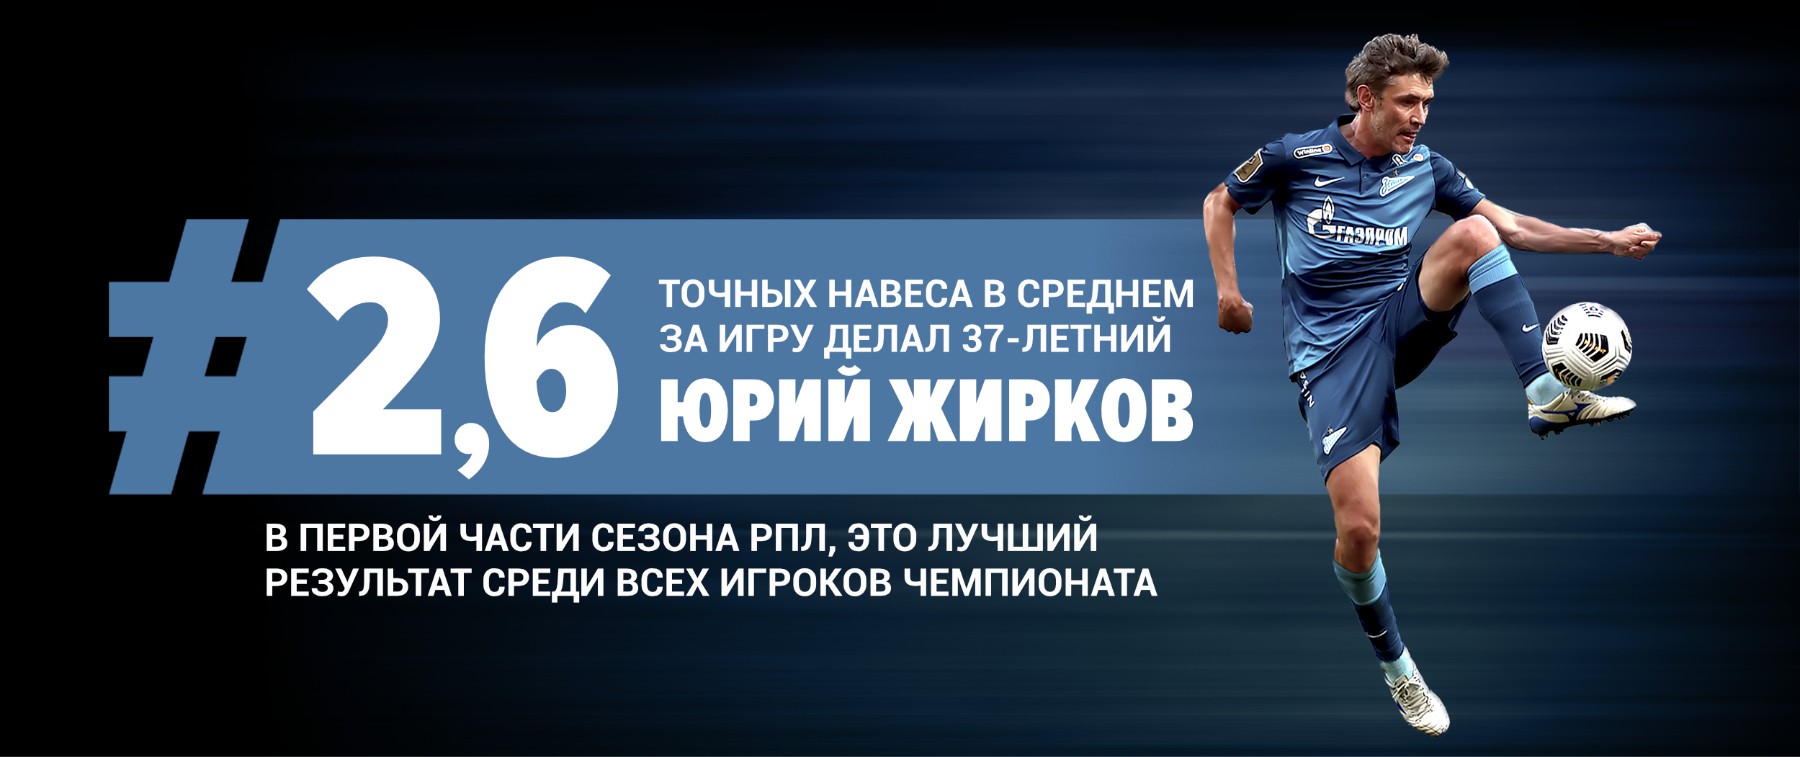 37-летний Юрий Жирков в первой половине сезона РПЛ лидирует по точным навесам за игру | PPS1